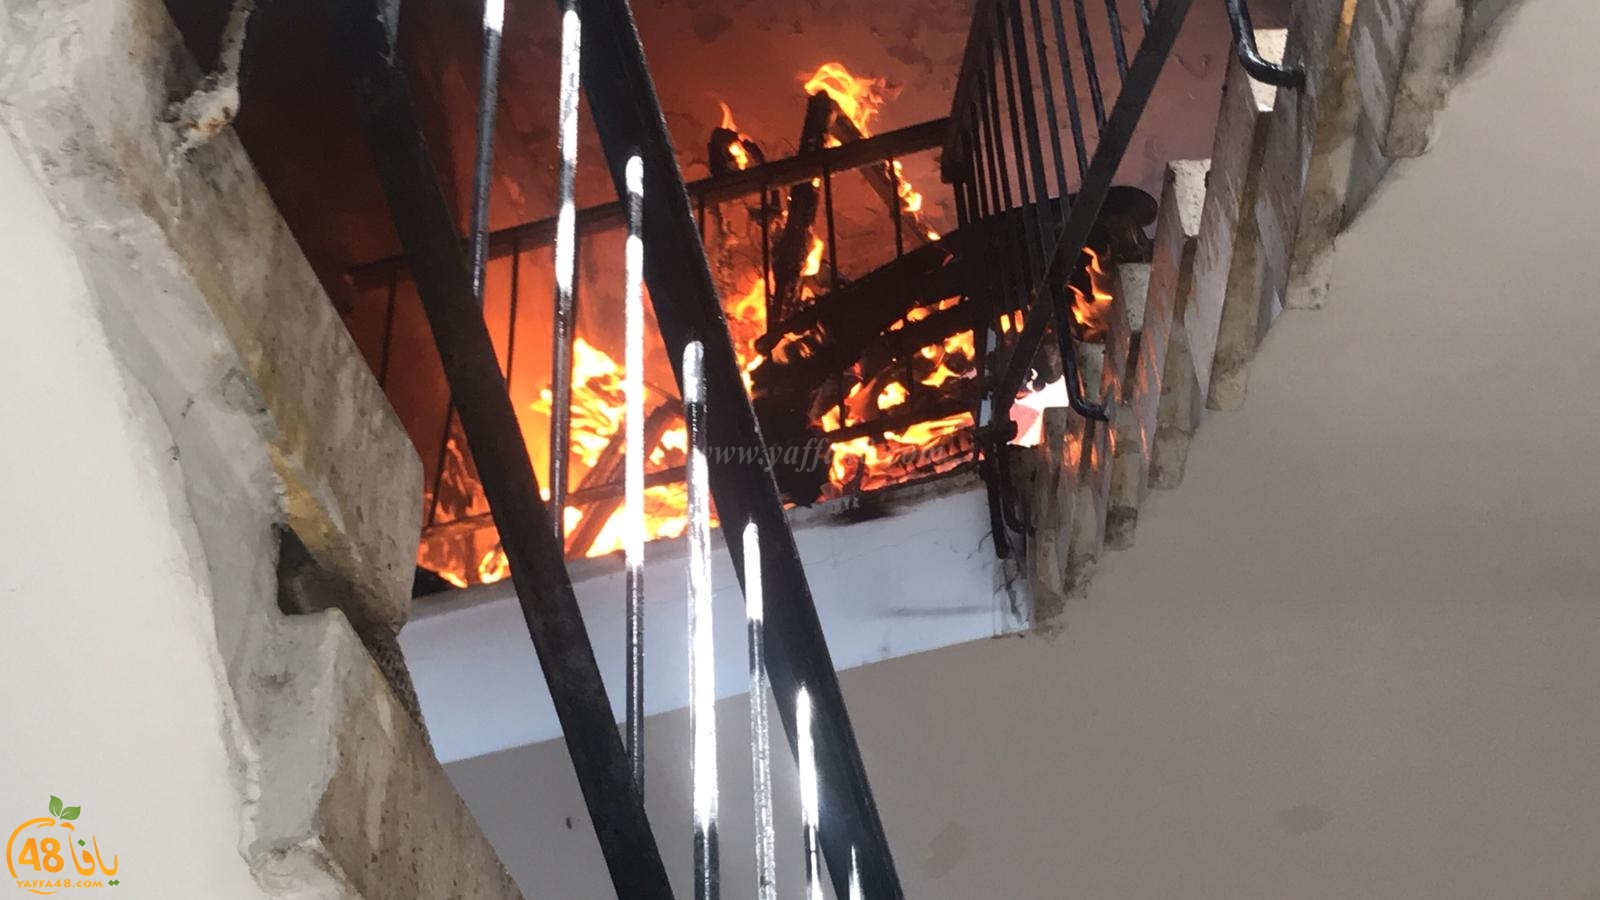  بالفيديو: حريق على سطح احد المباني بيافا دون وقوع اصابات 